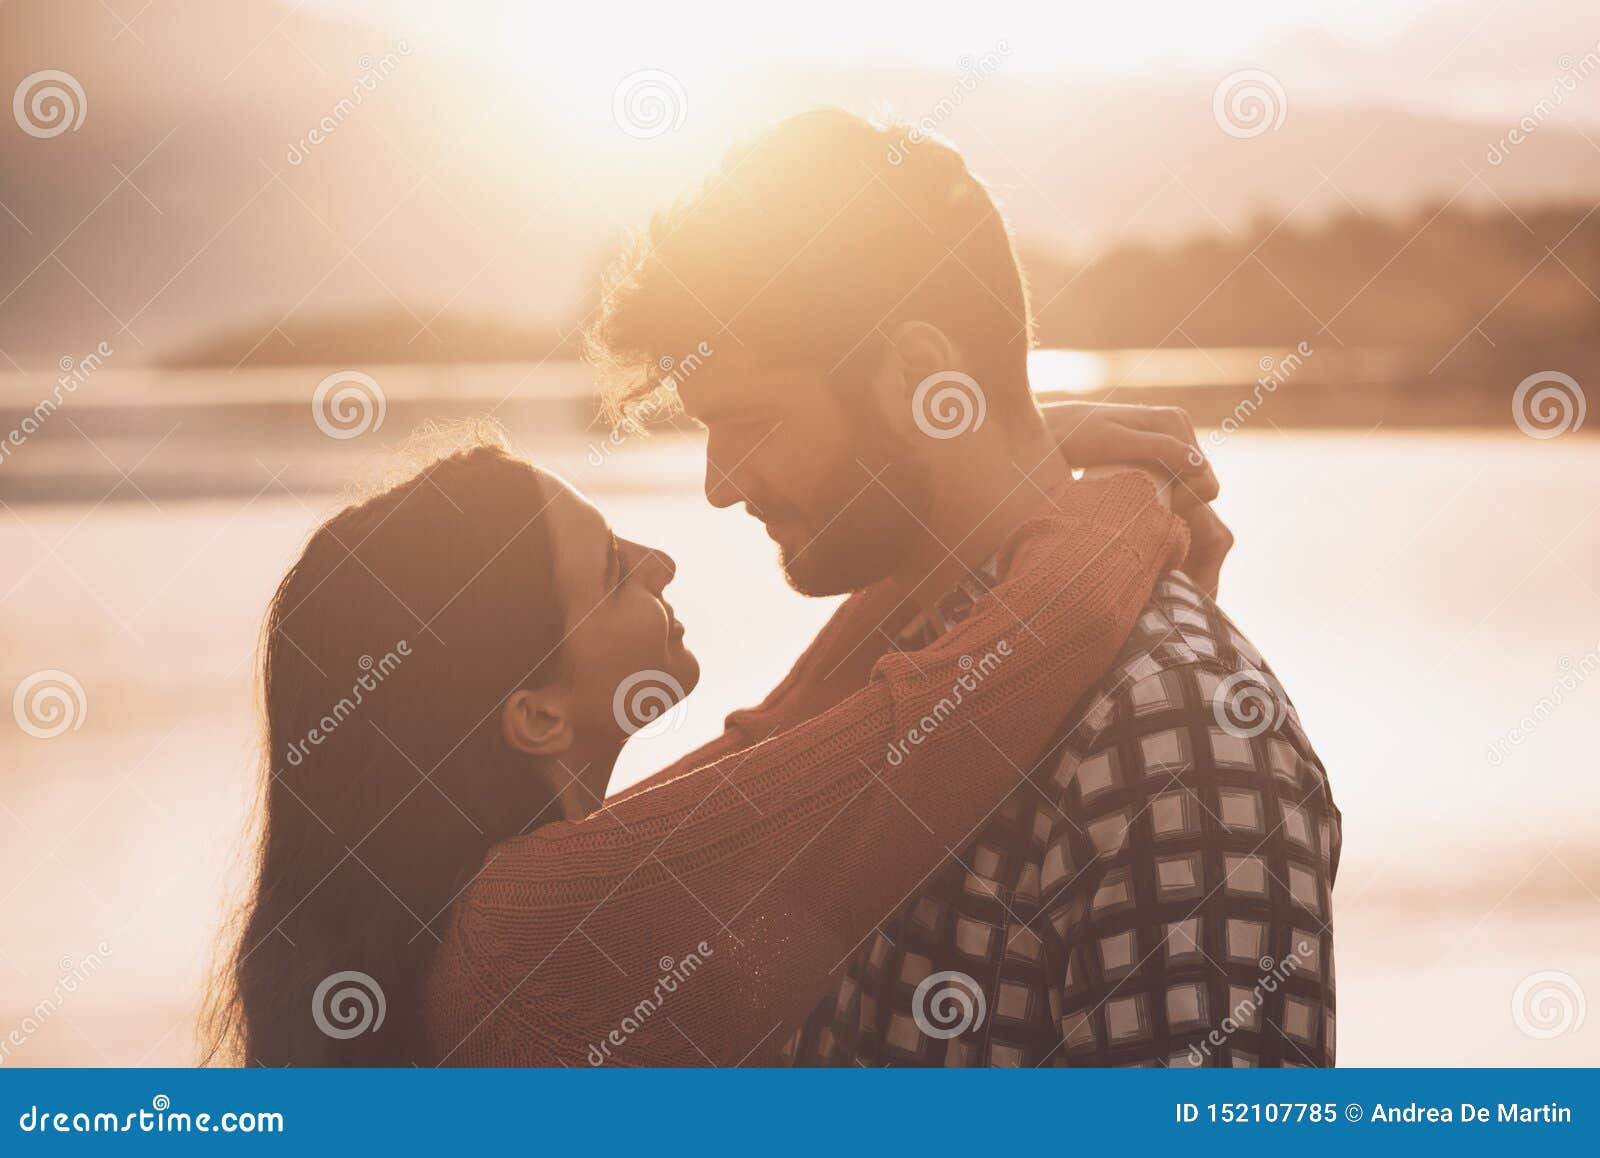 美丽的夫妇在爱在街头小巷庆祝情人节接吻高清摄影大图-千库网